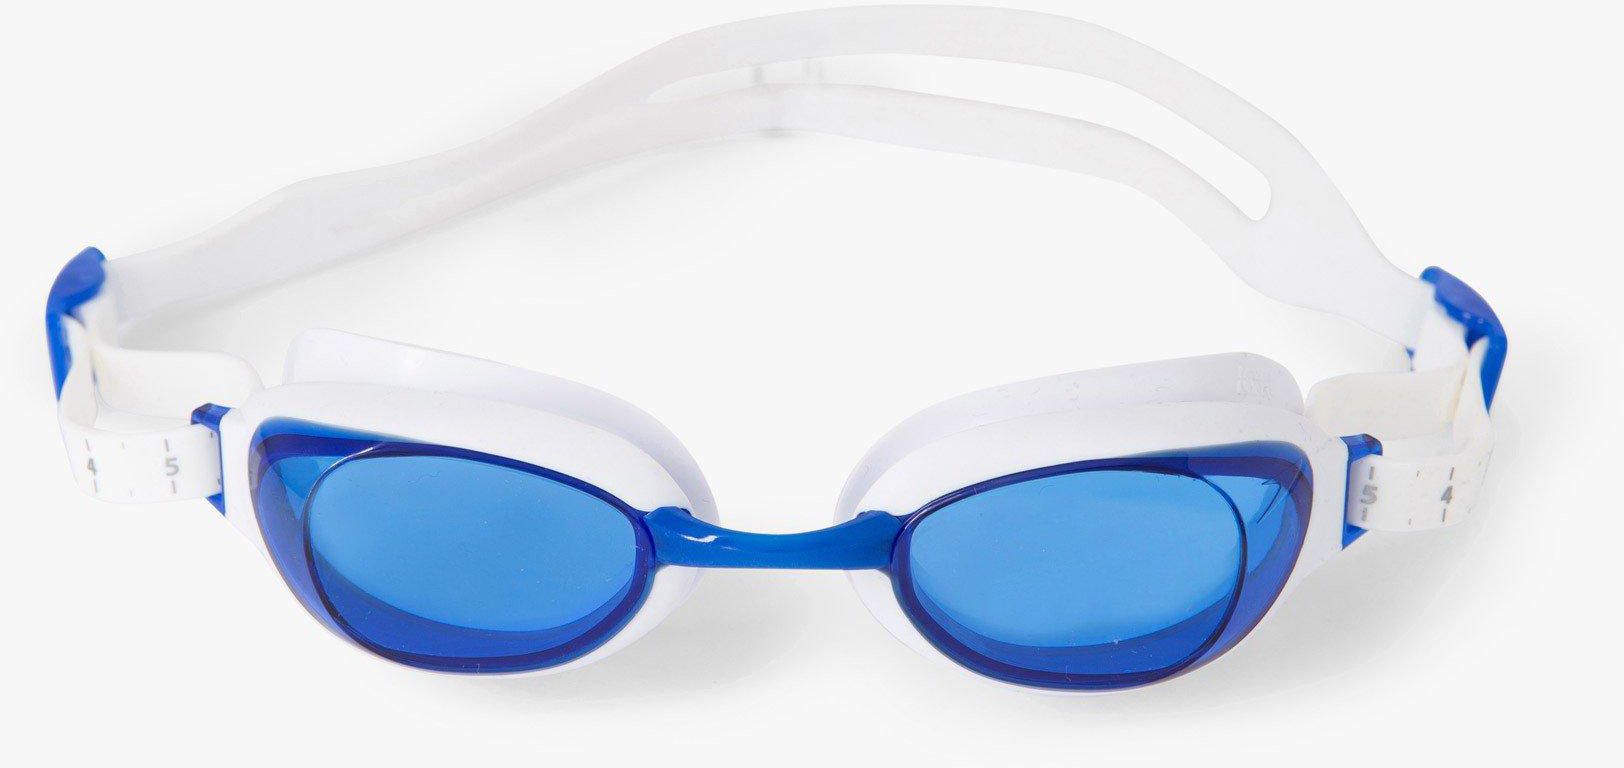 Men's Aquapure Goggles